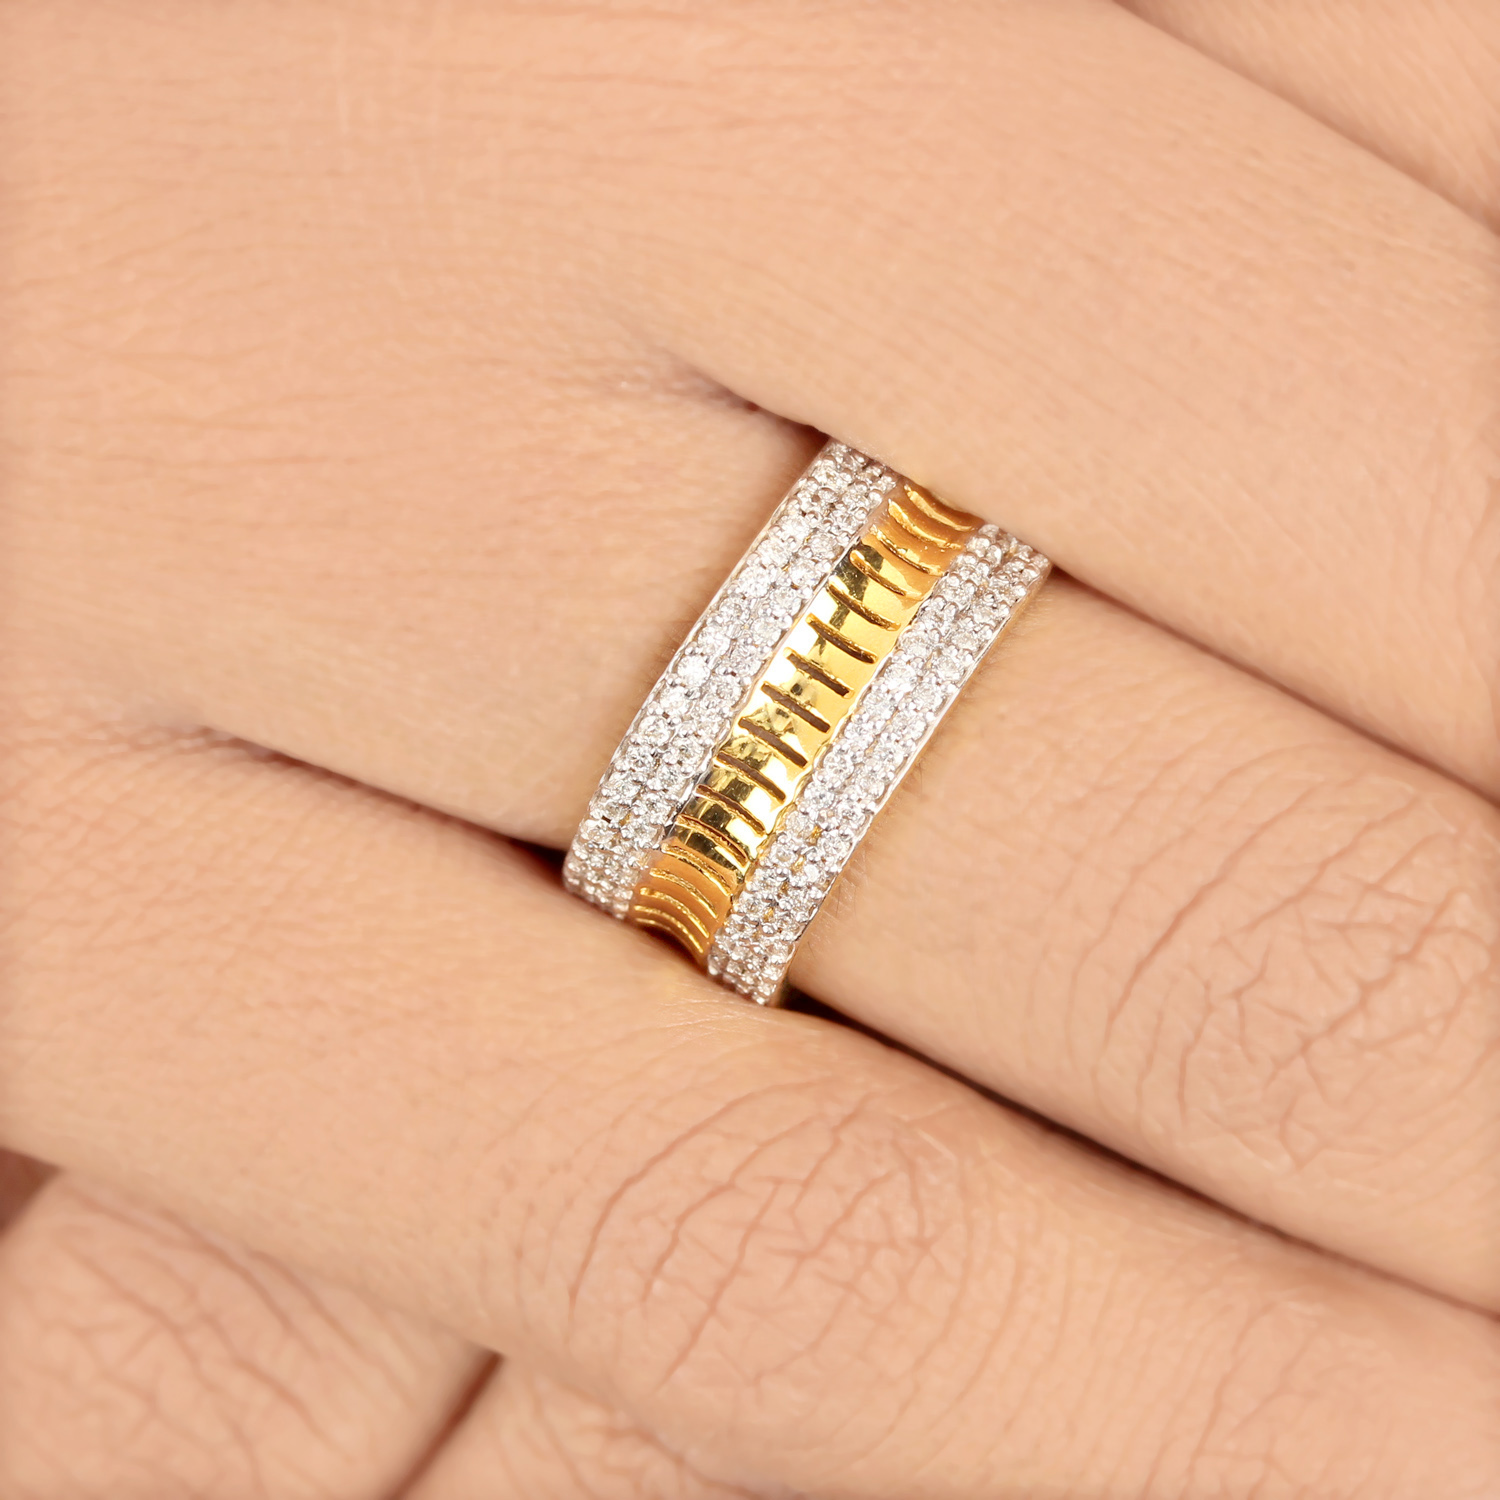 Unique Design Ring In Gold